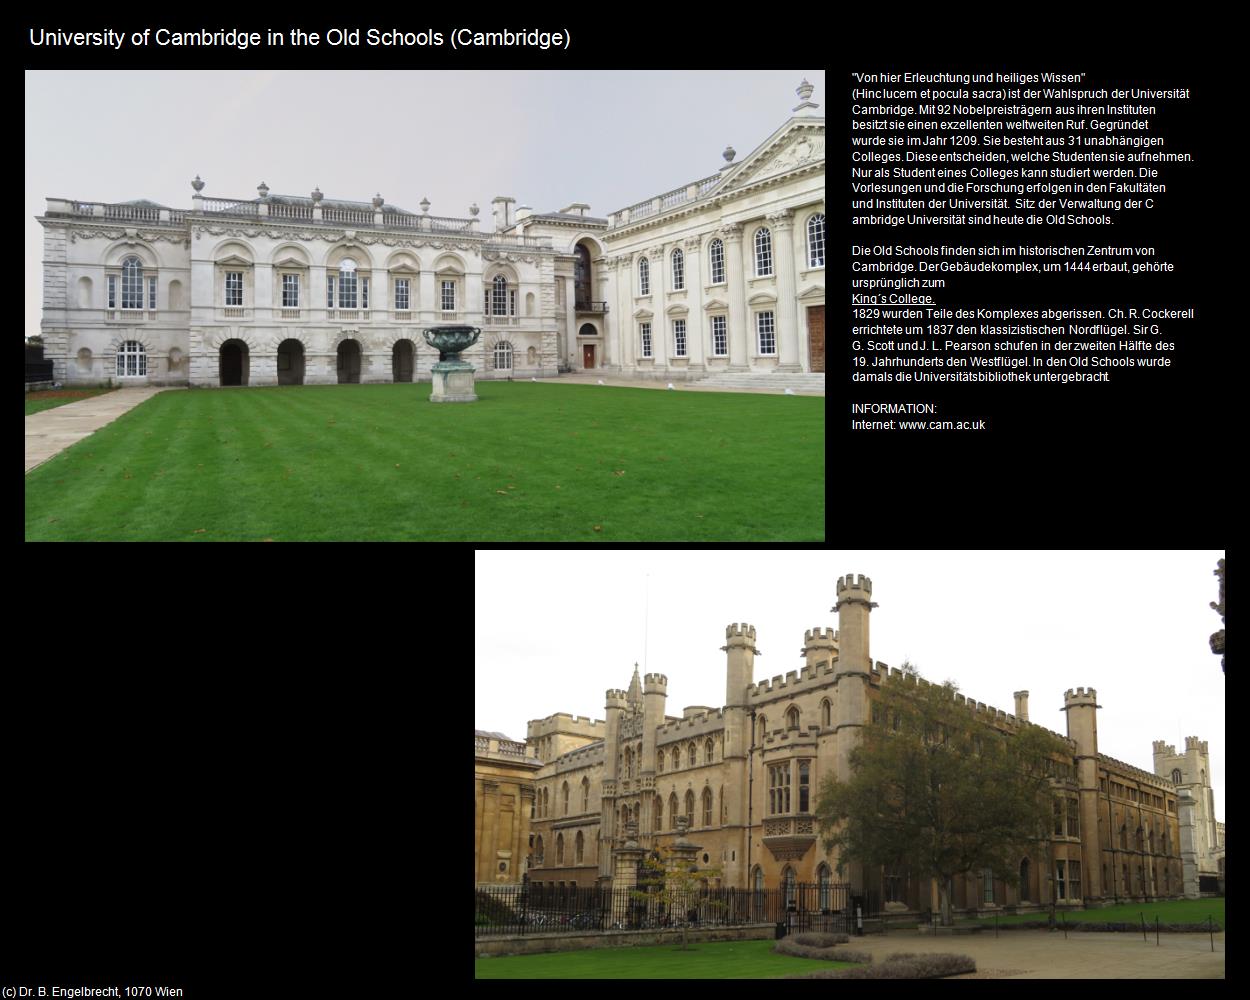 University of Cambridge in the Old Schools (Cambridge, England) in Kulturatlas-ENGLAND und WALES(c)B.Engelbrecht